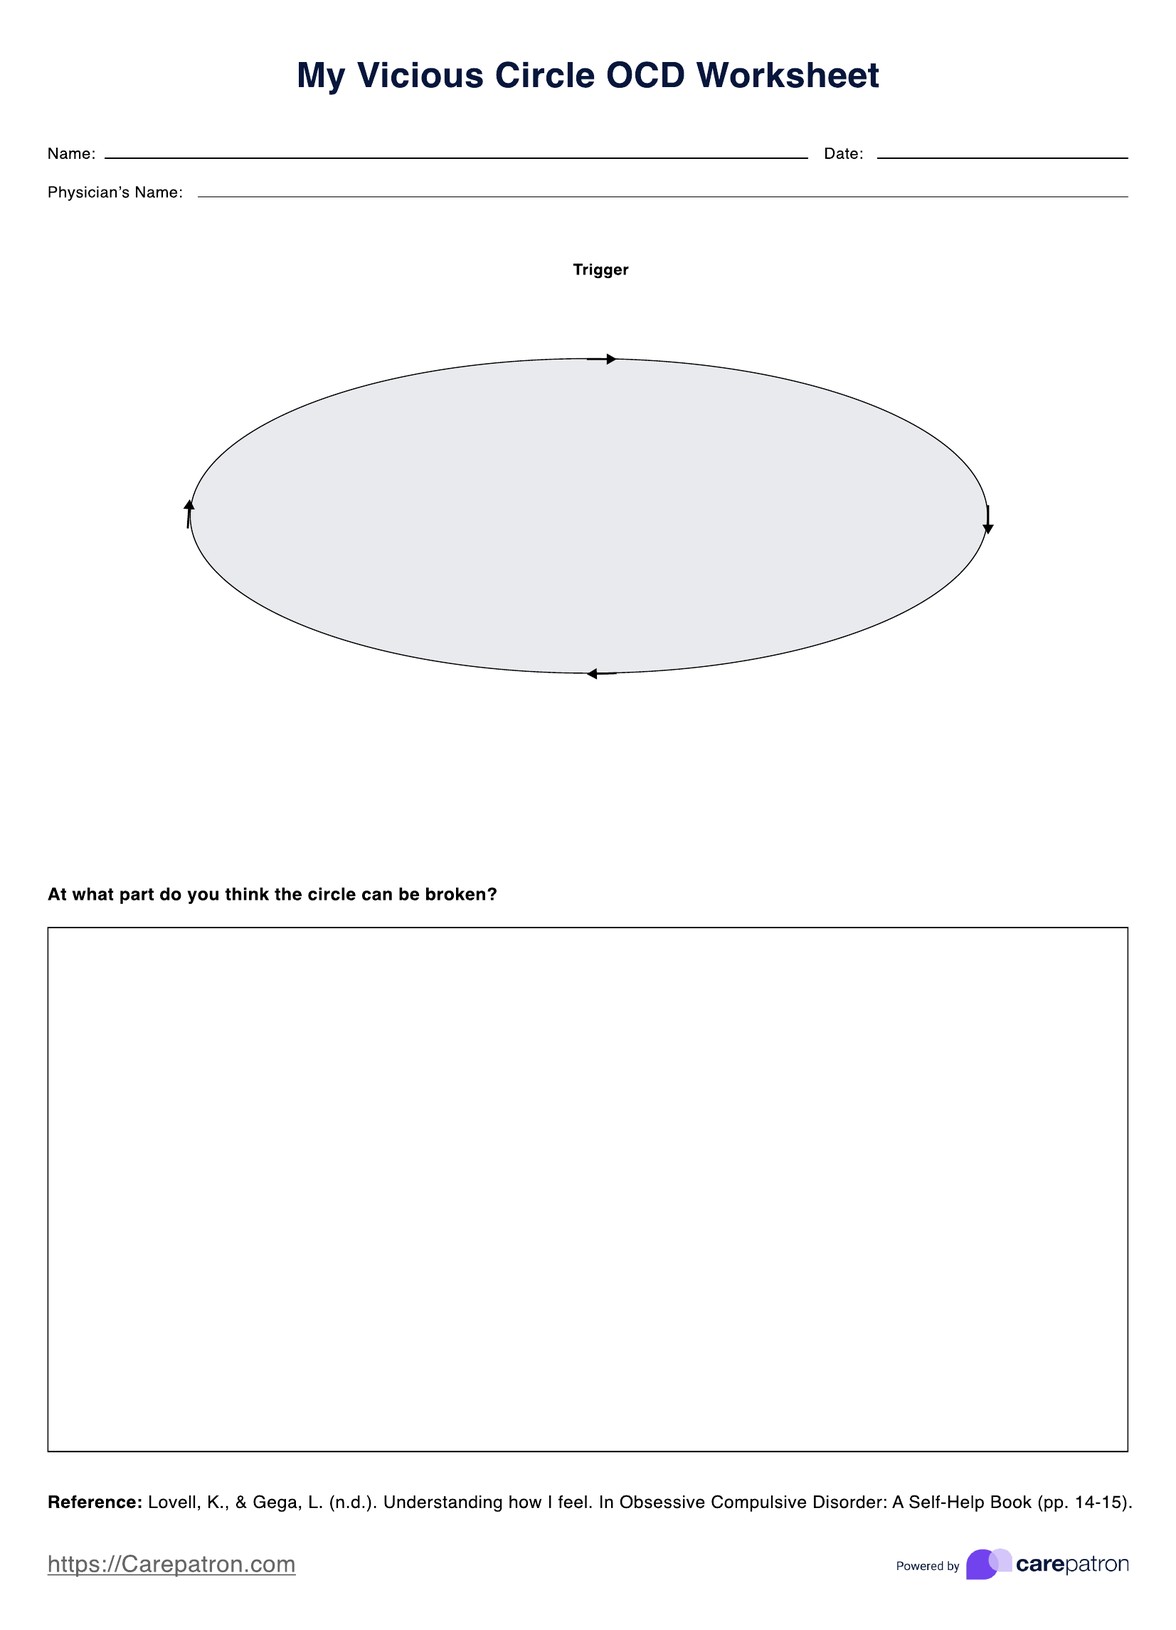 My Vicious Circle OCD Worksheet PDF Example